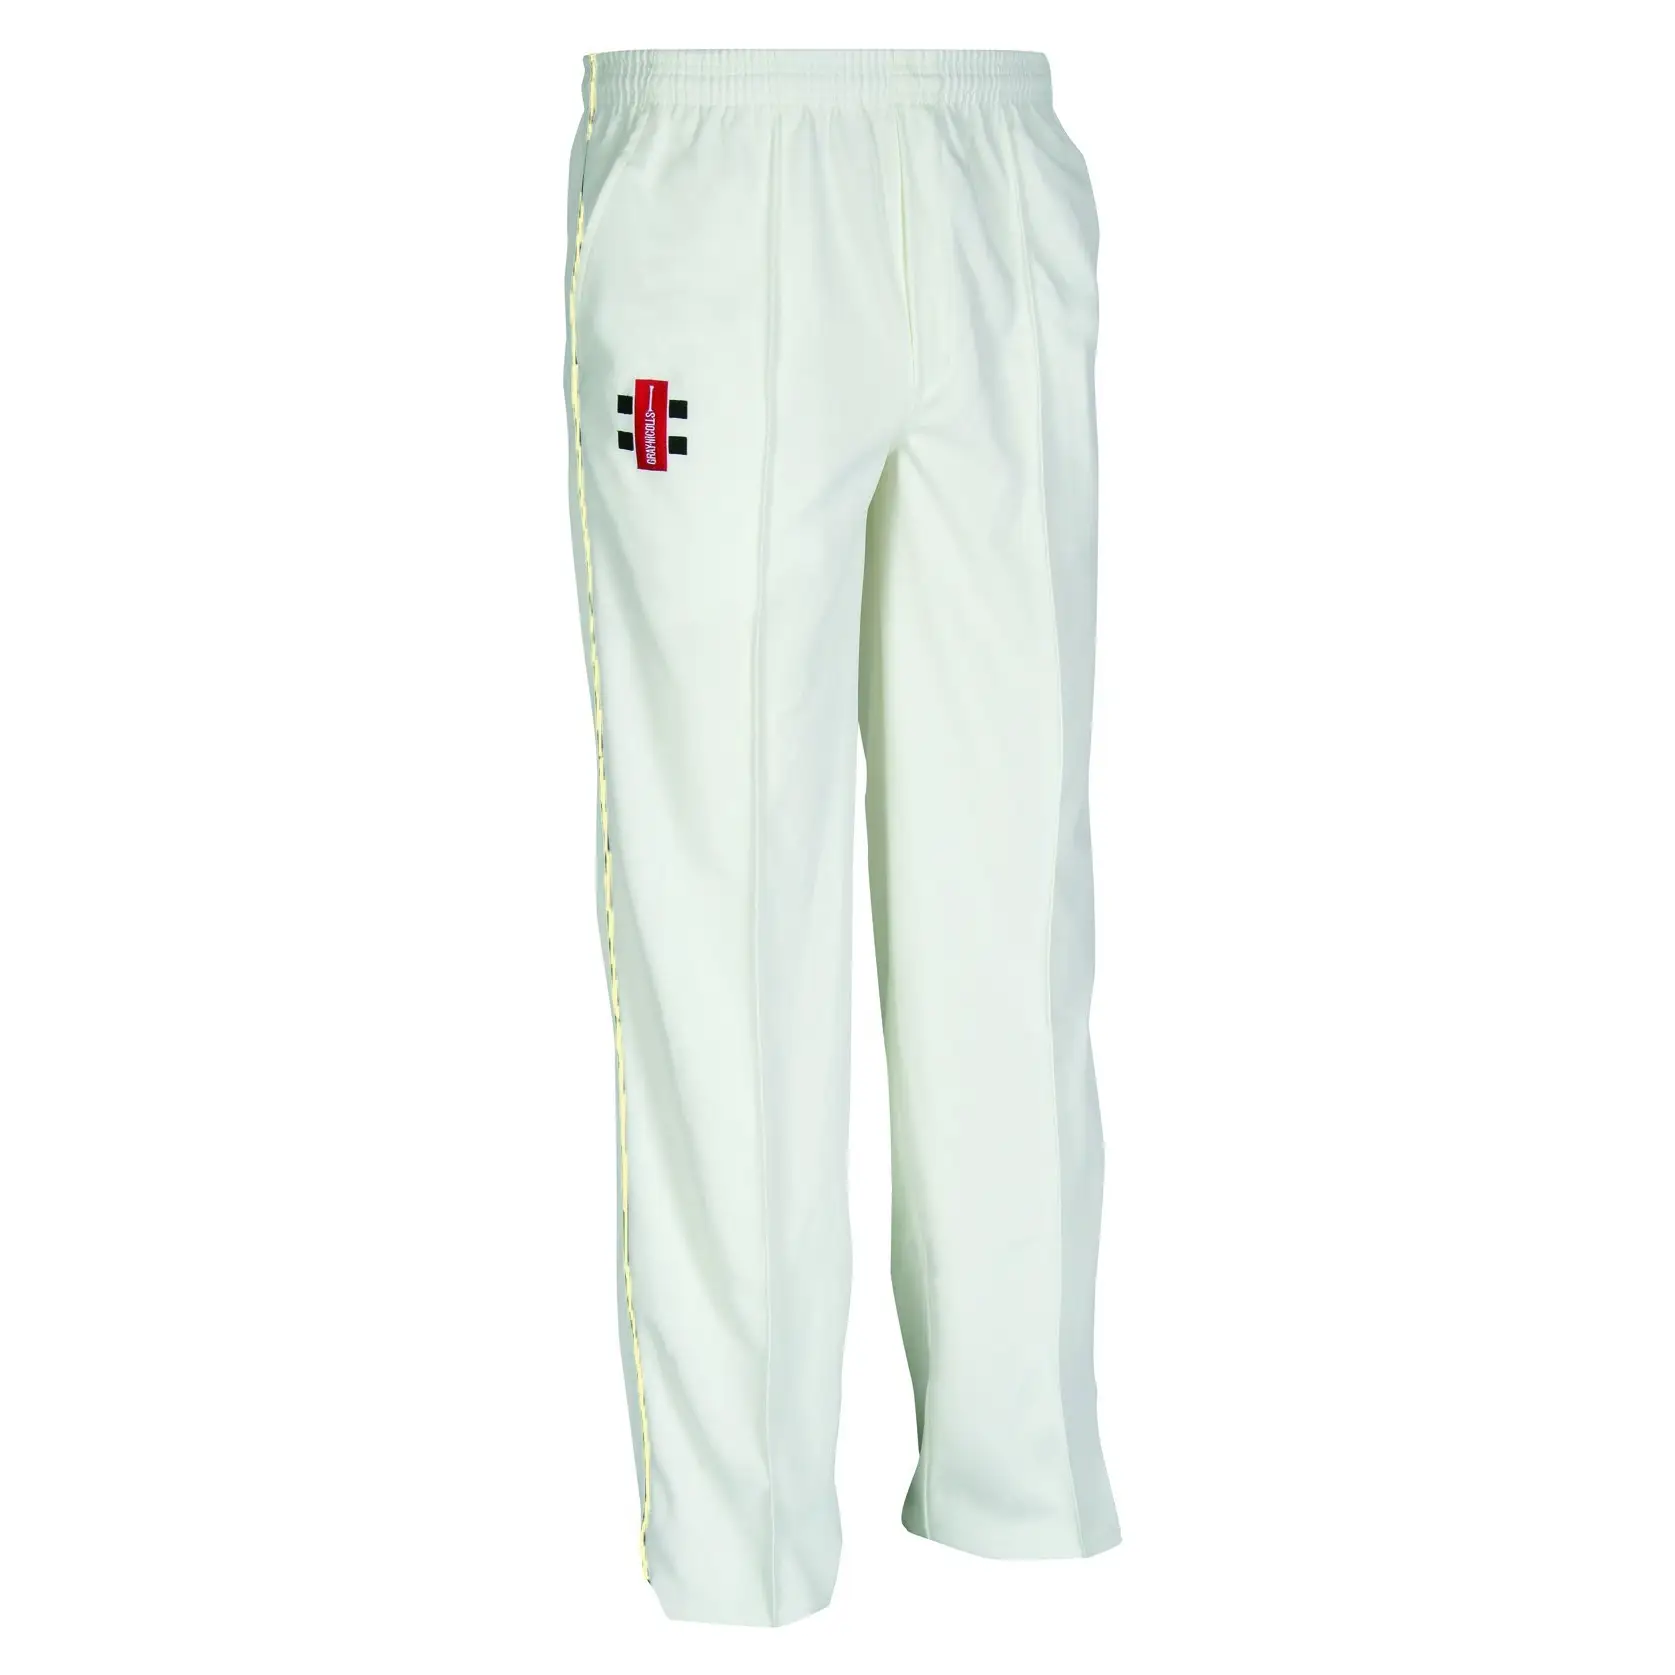 Cricket White Trousers  Prokicksports